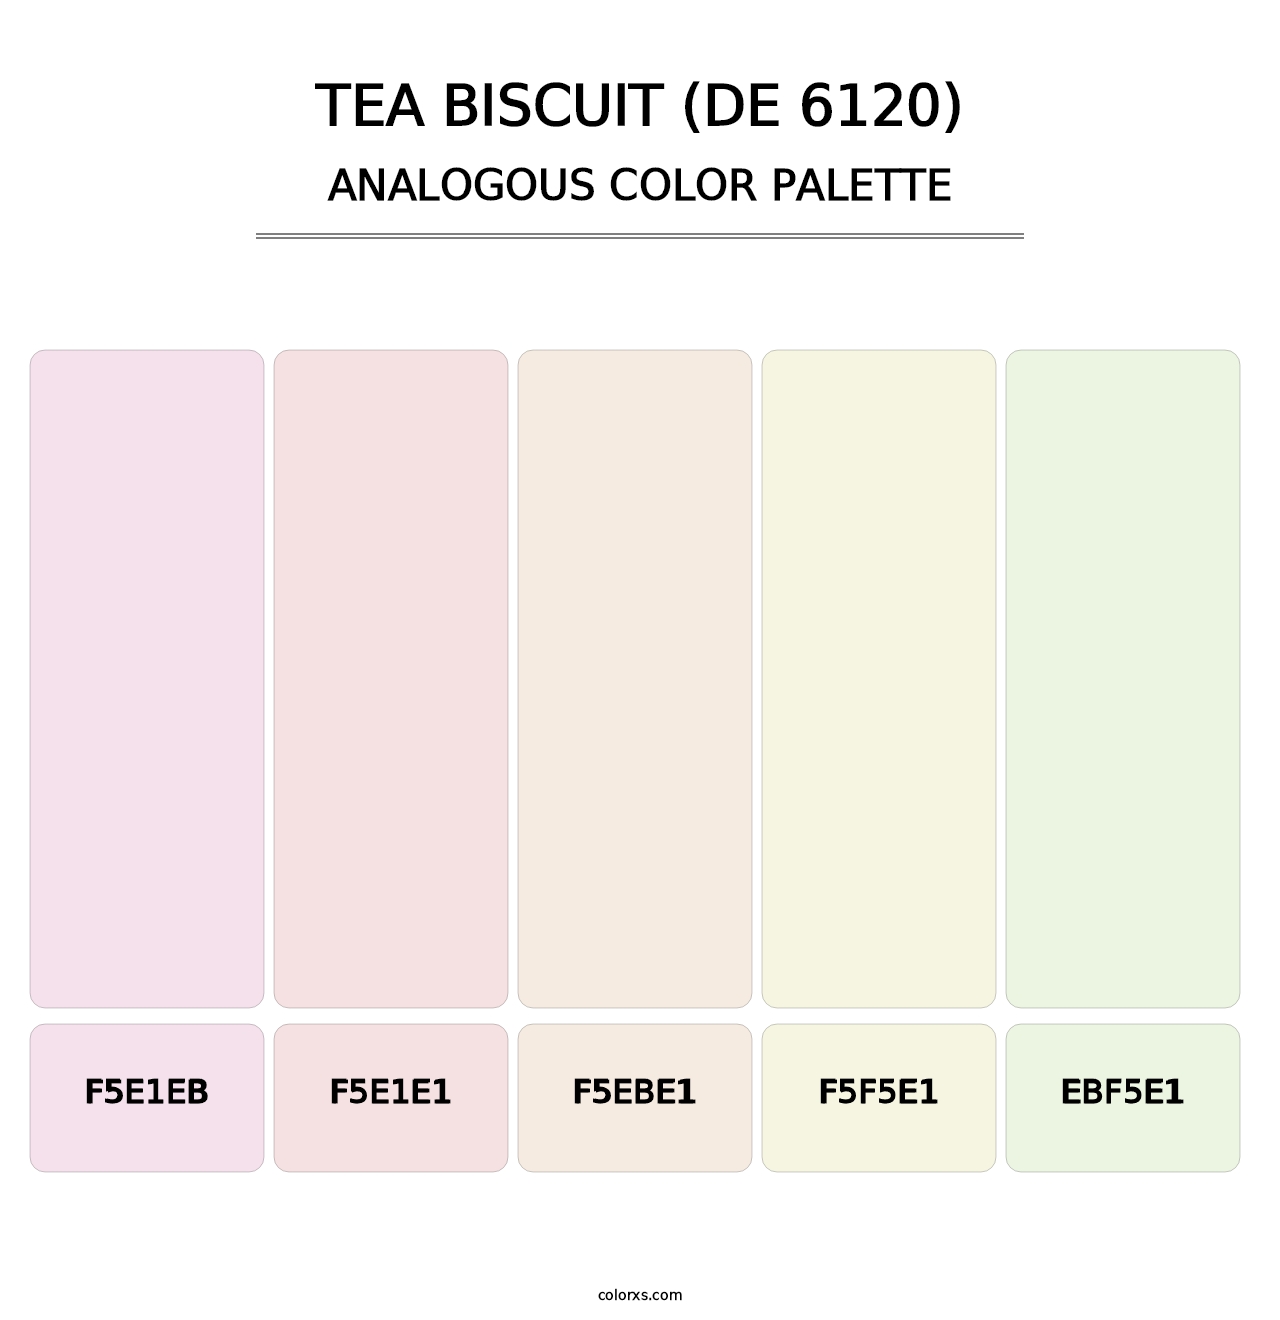 Tea Biscuit (DE 6120) - Analogous Color Palette